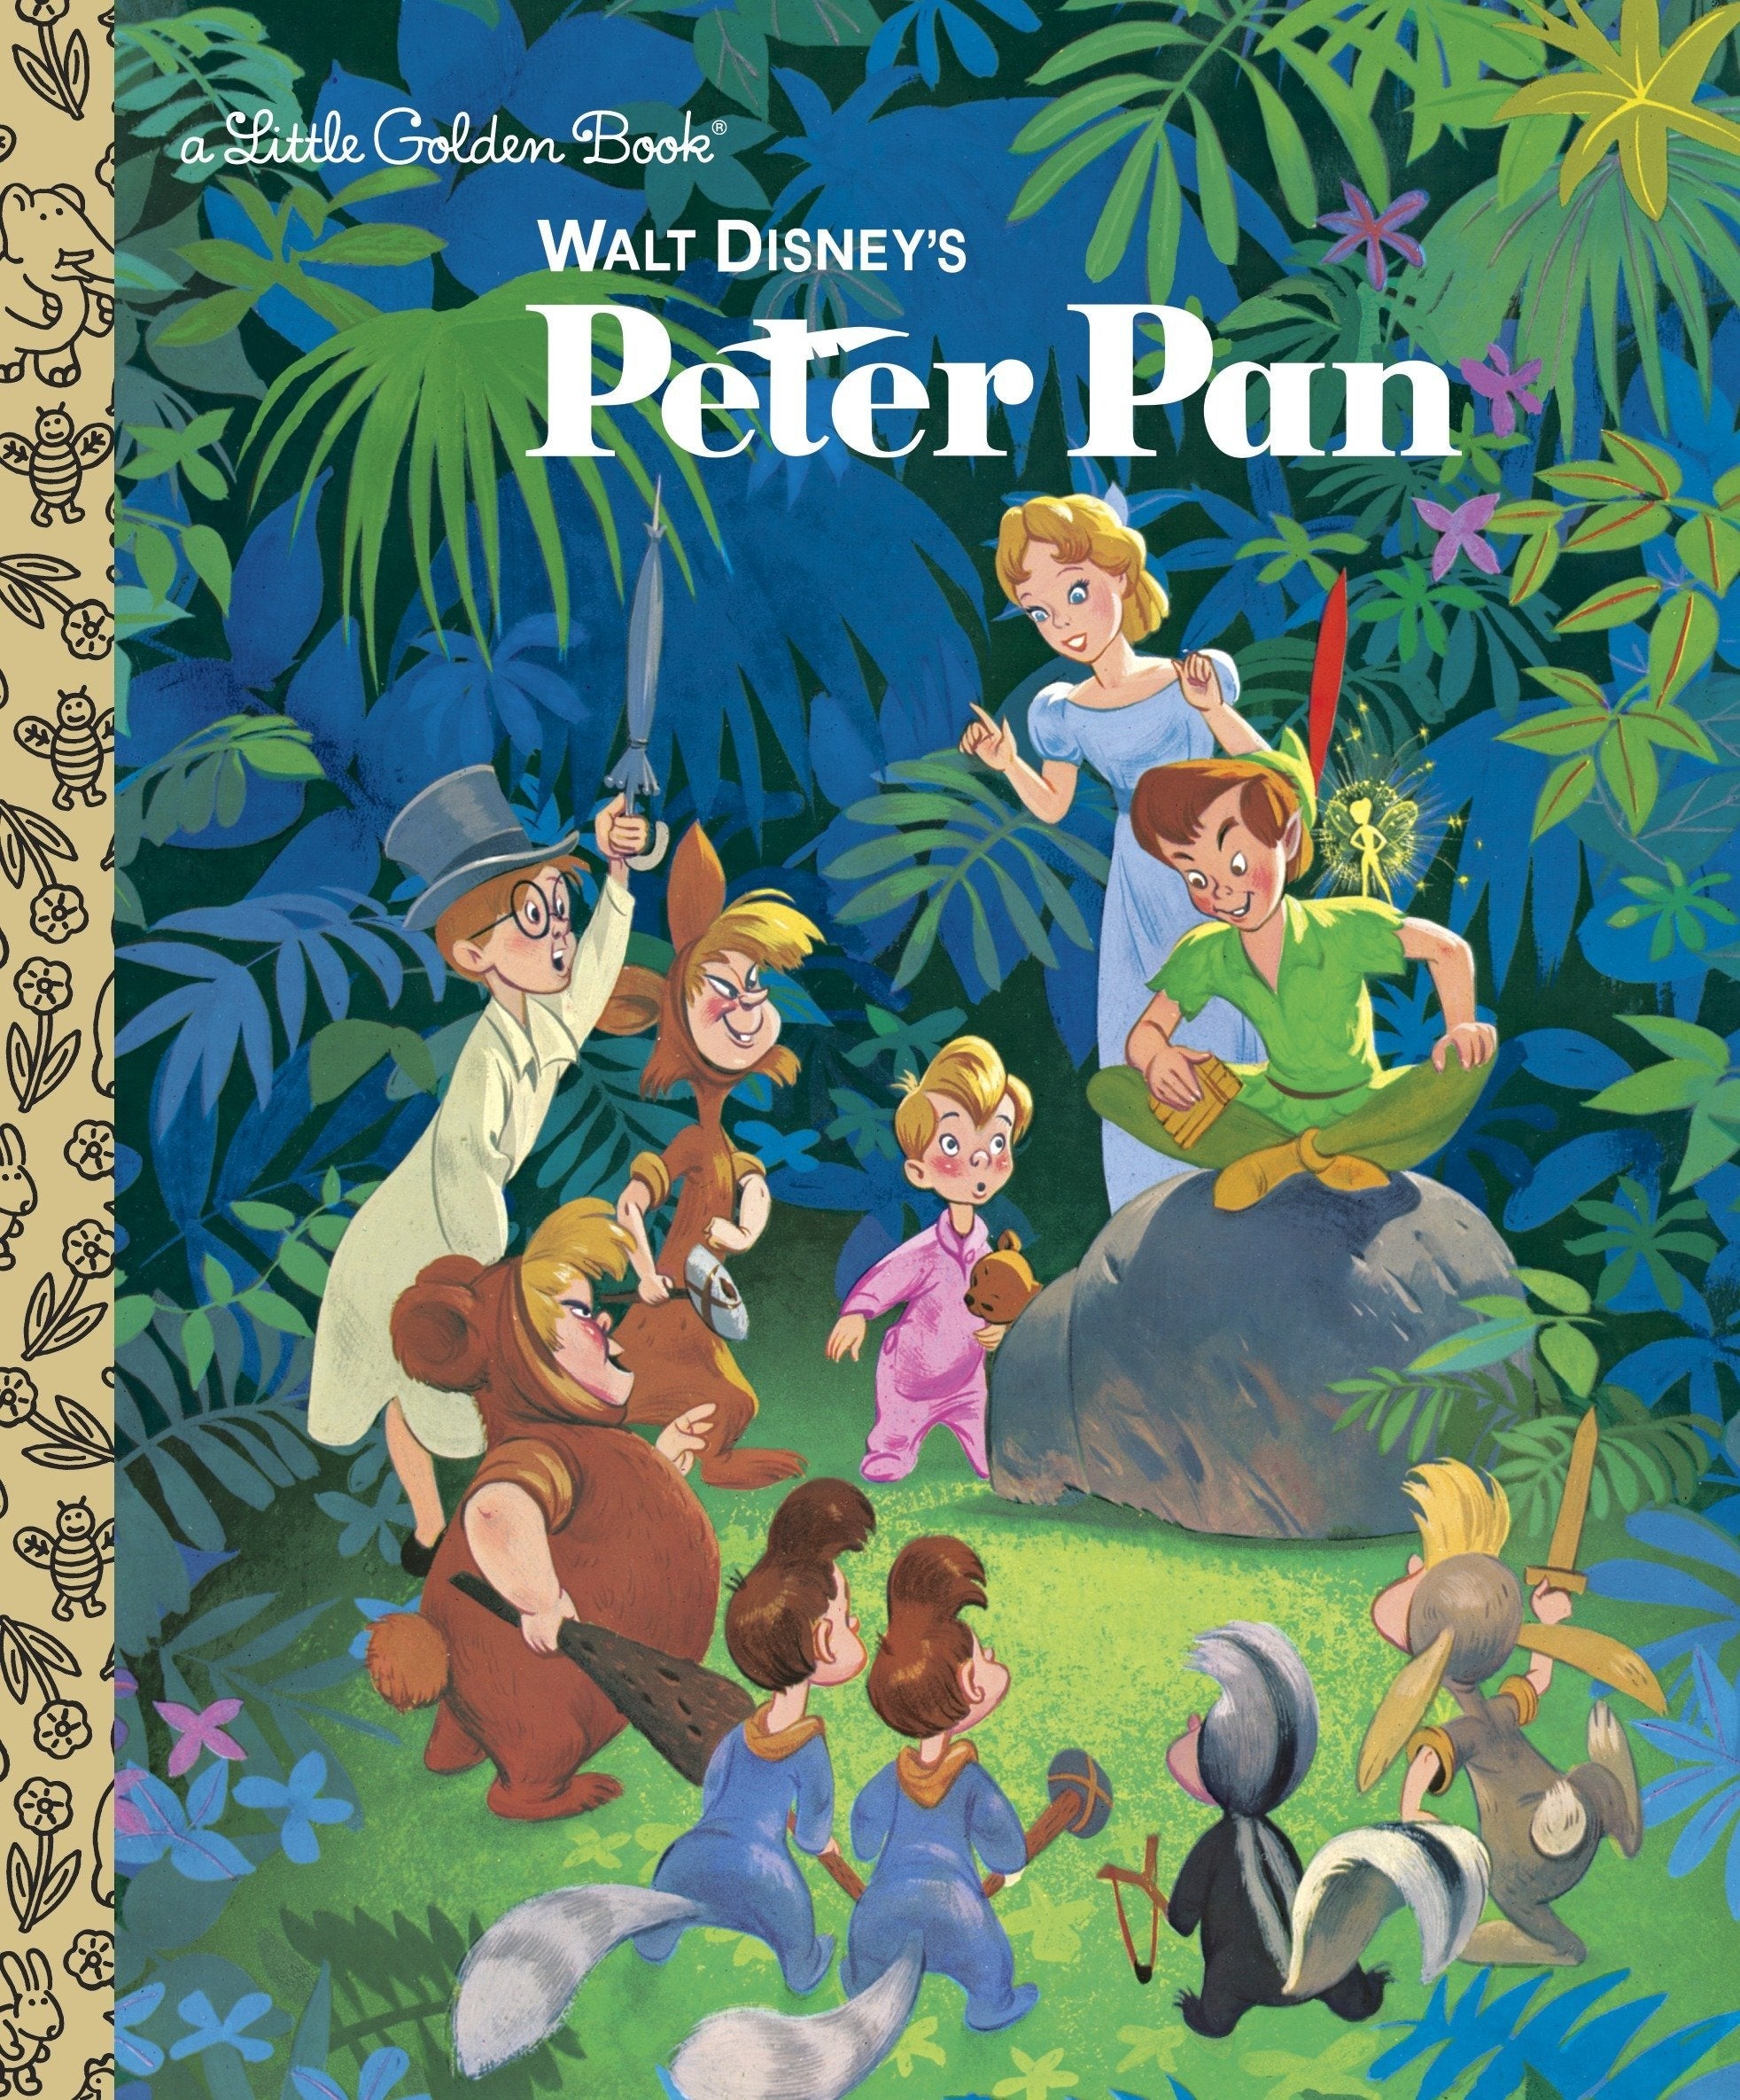 Peter Pan Suitcase, Peter Pan Cabin Bag, Peter Pan Gifts, Kids Luggage,  Peter Pan Art 